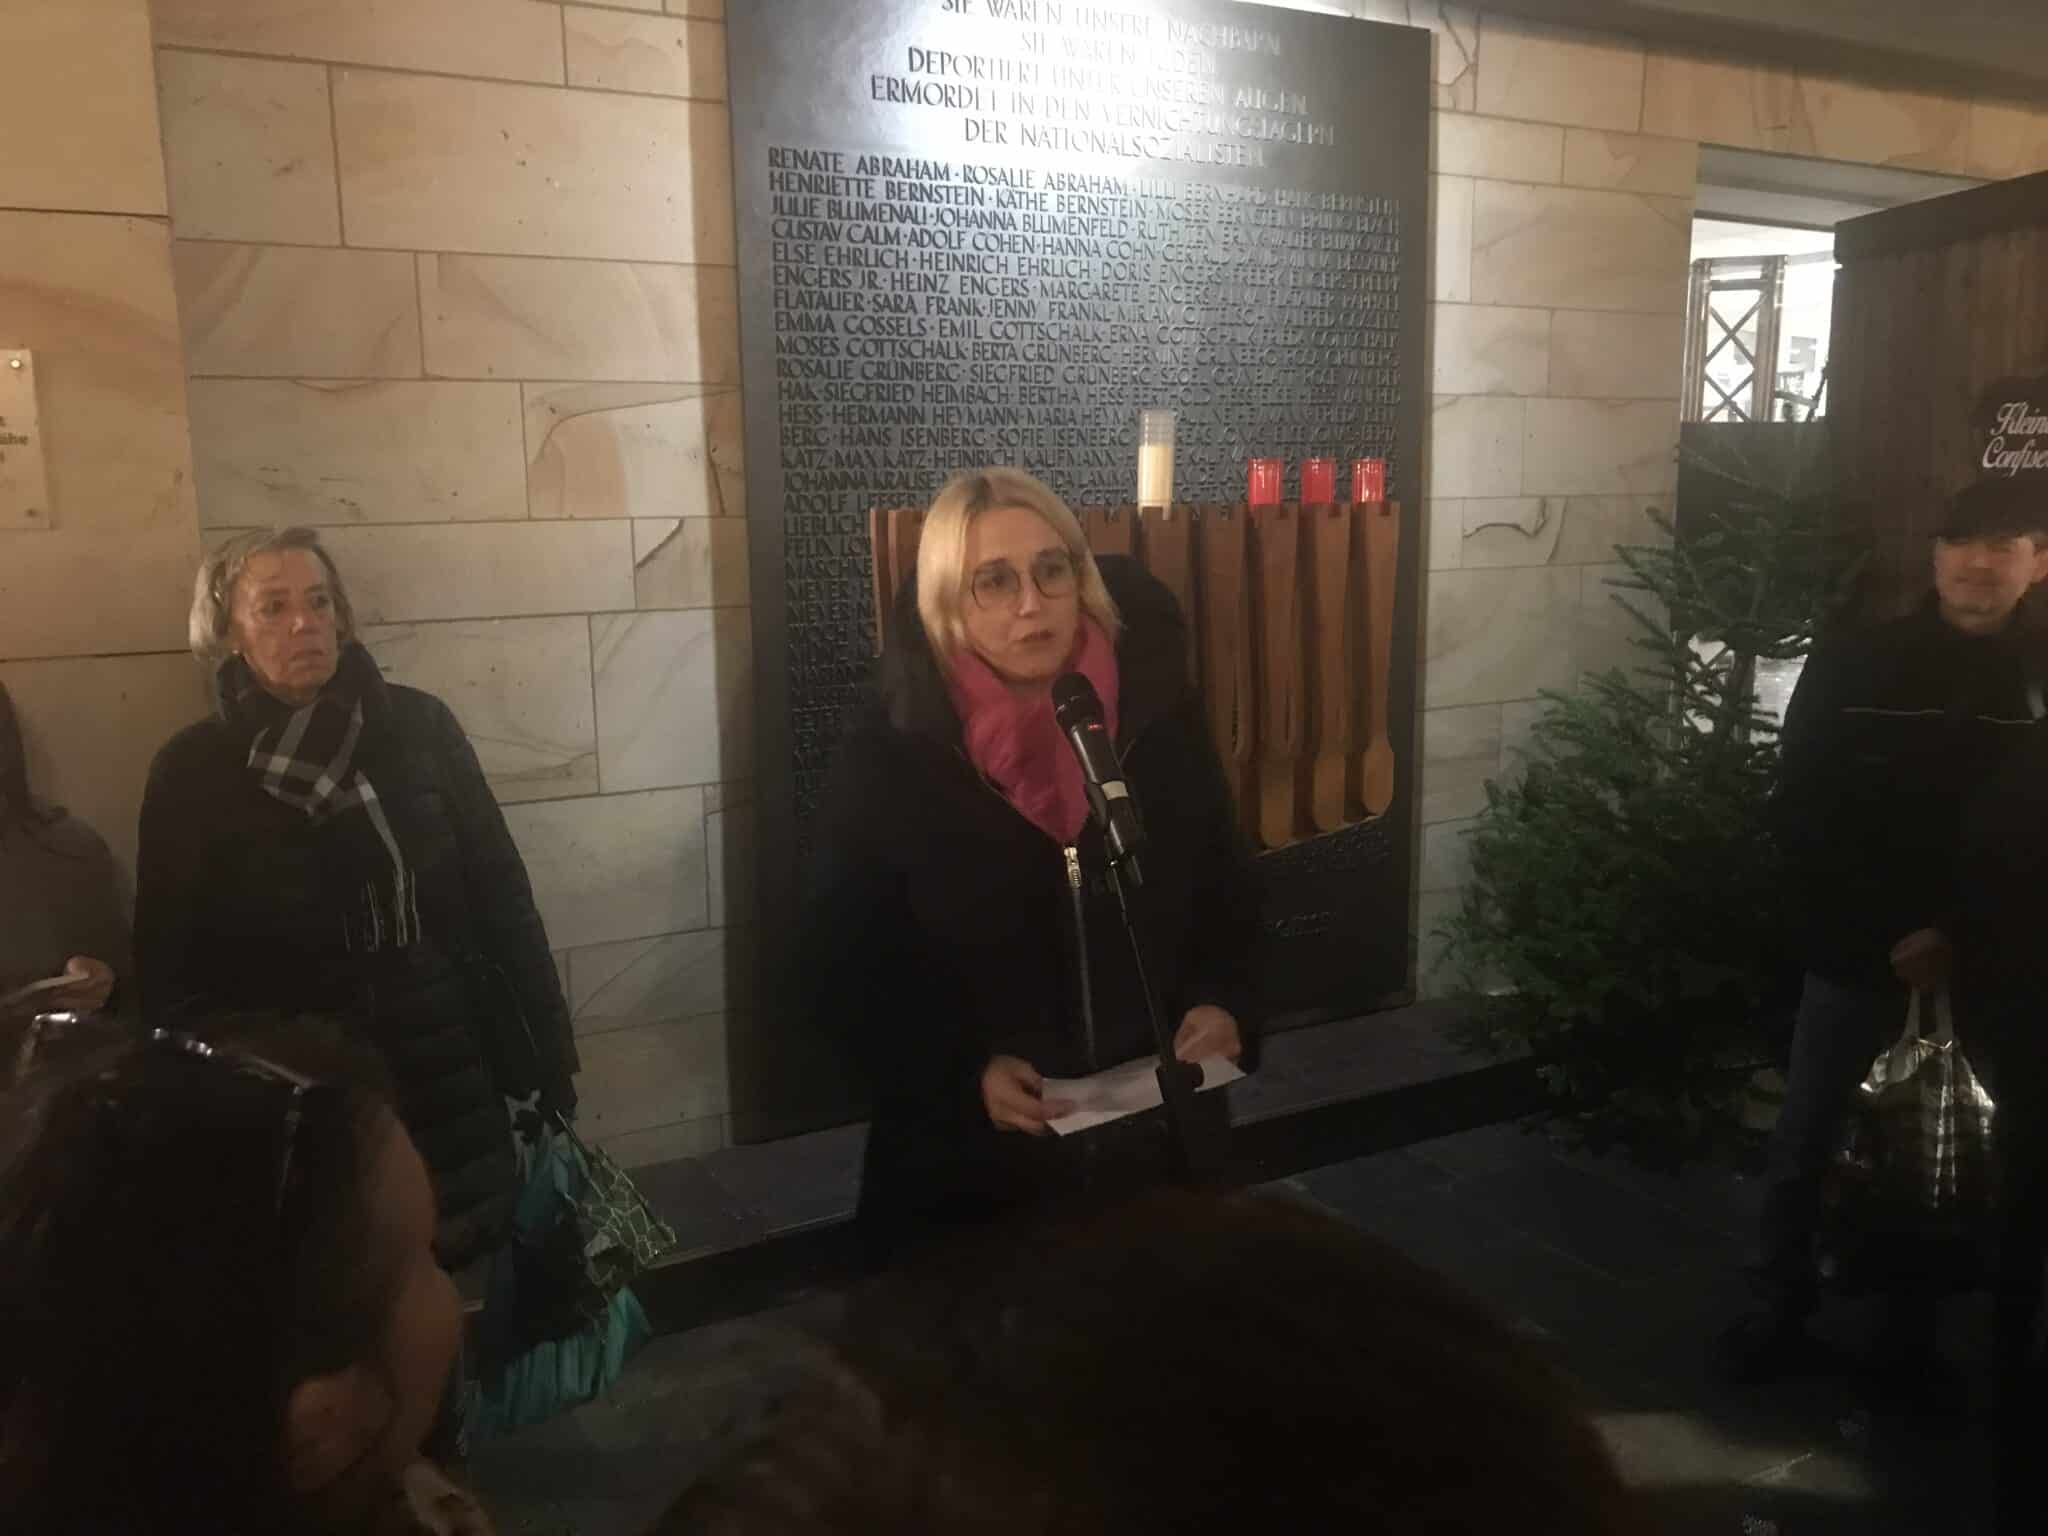 Oberbürgermeisterin Katharina Pötter wendet sich an die Menge vor der Gedenktafel an der Stadtbibliothek. / Foto: Berliner